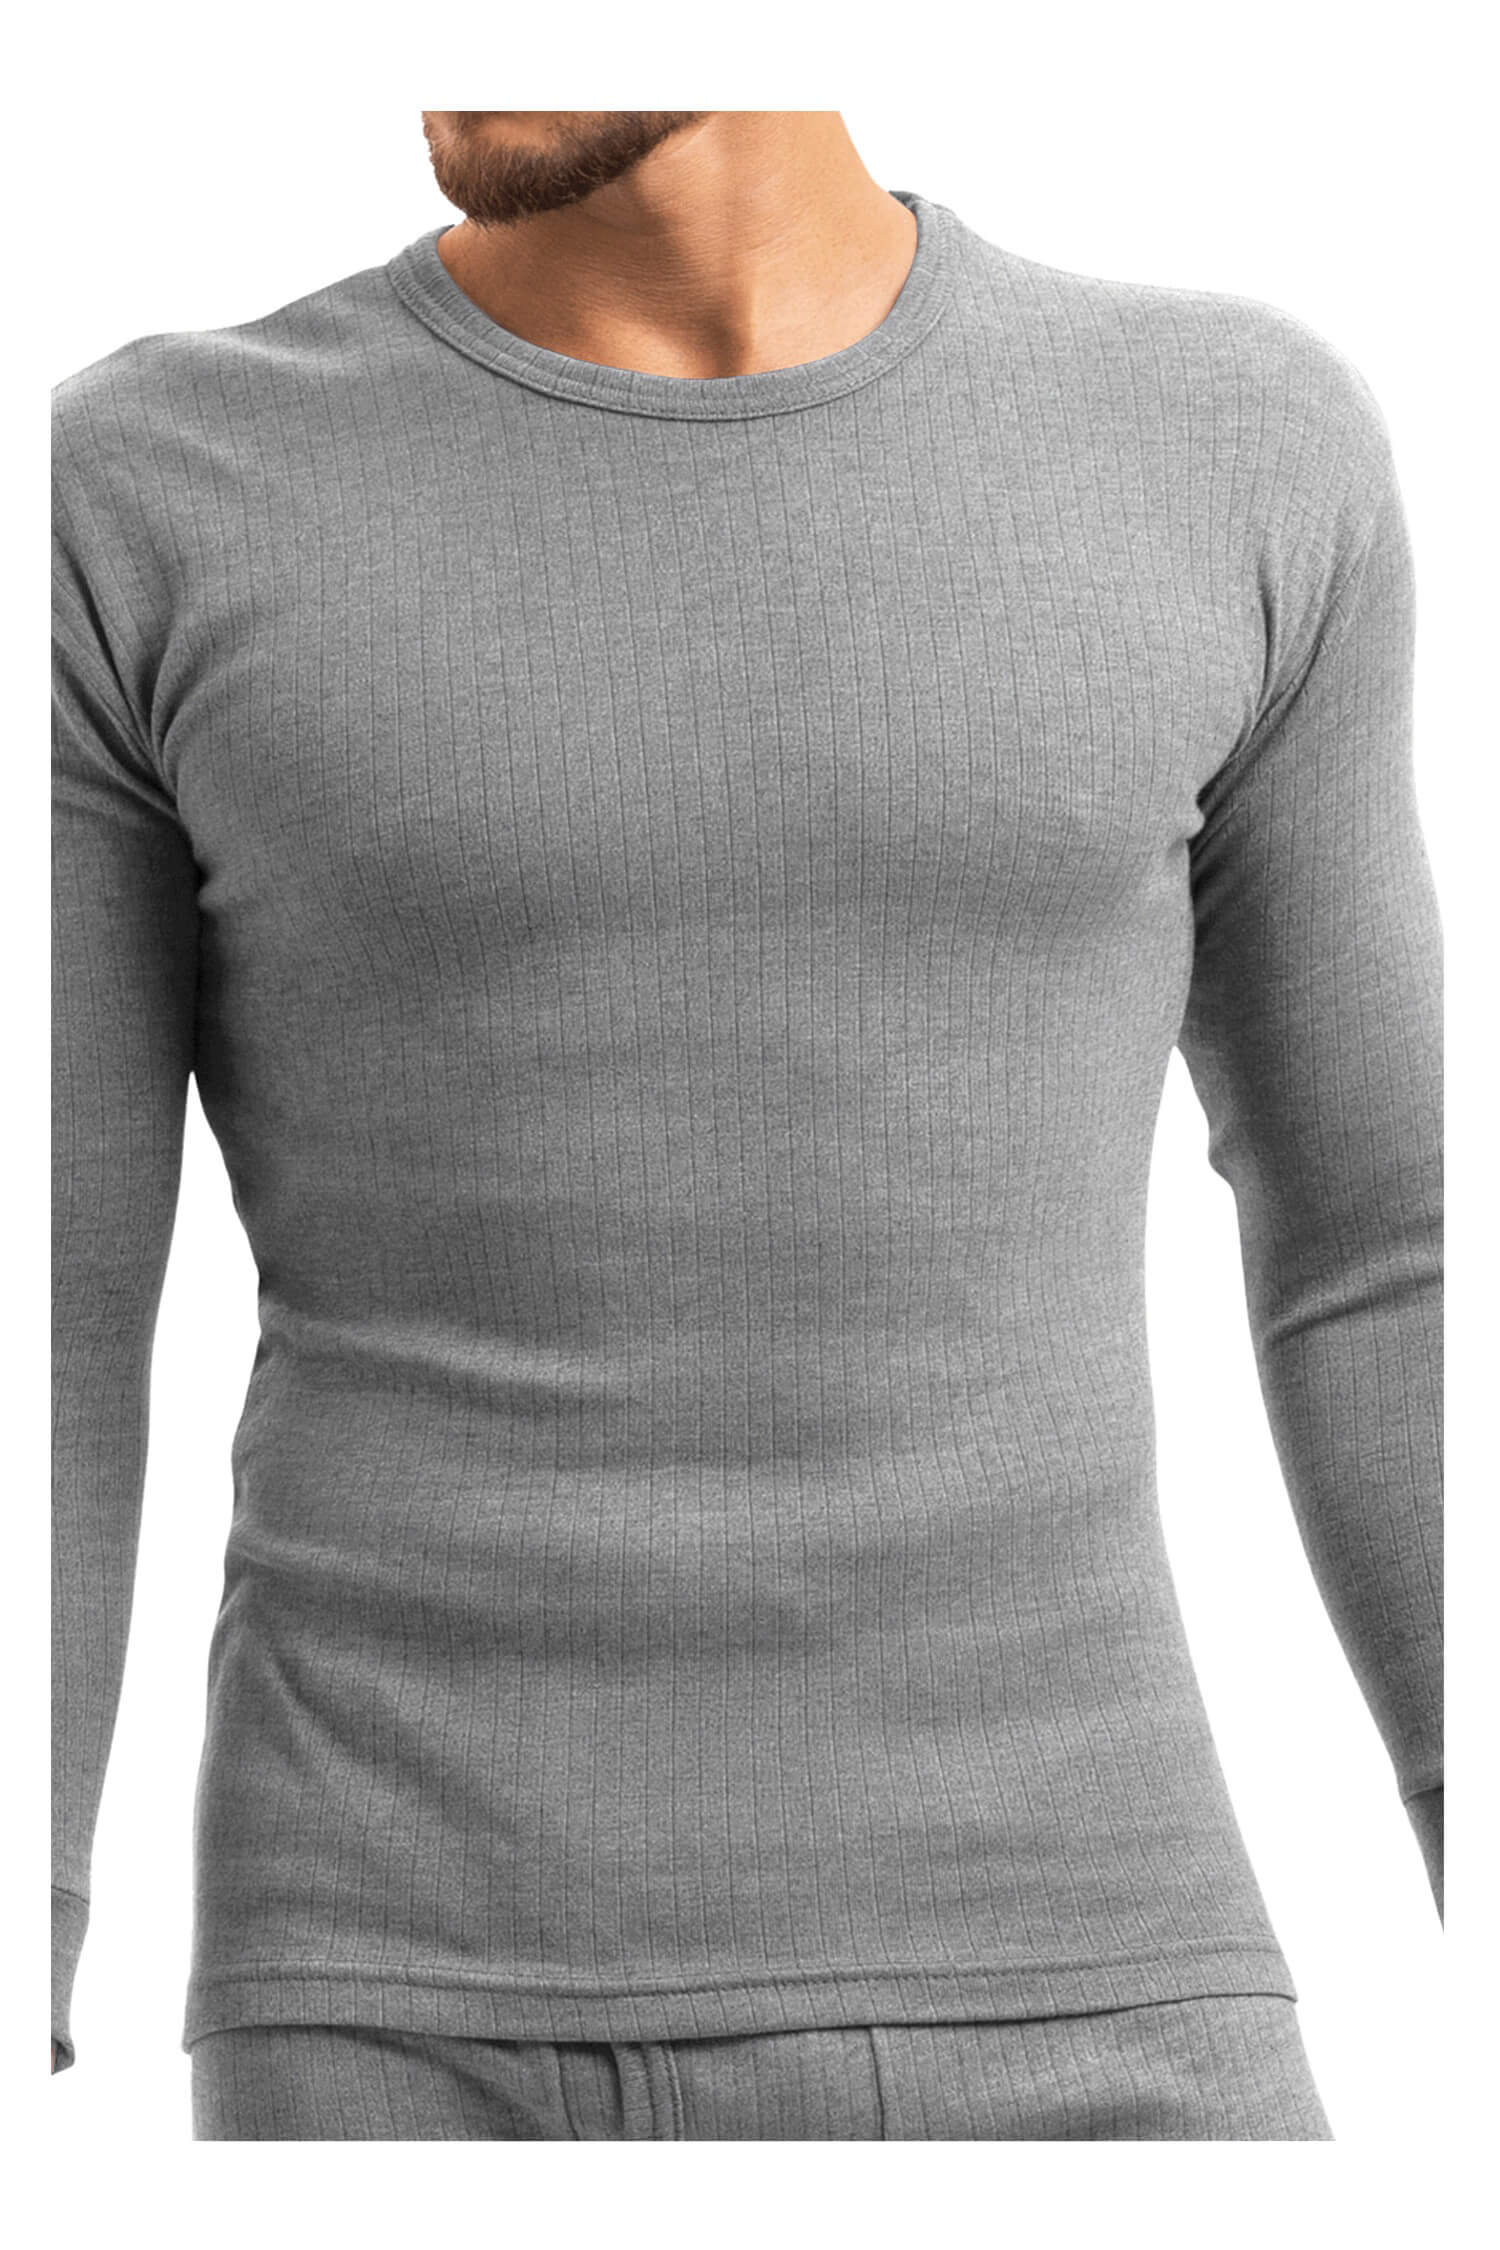 Braňo pánské thermo tričko 256 M šedá